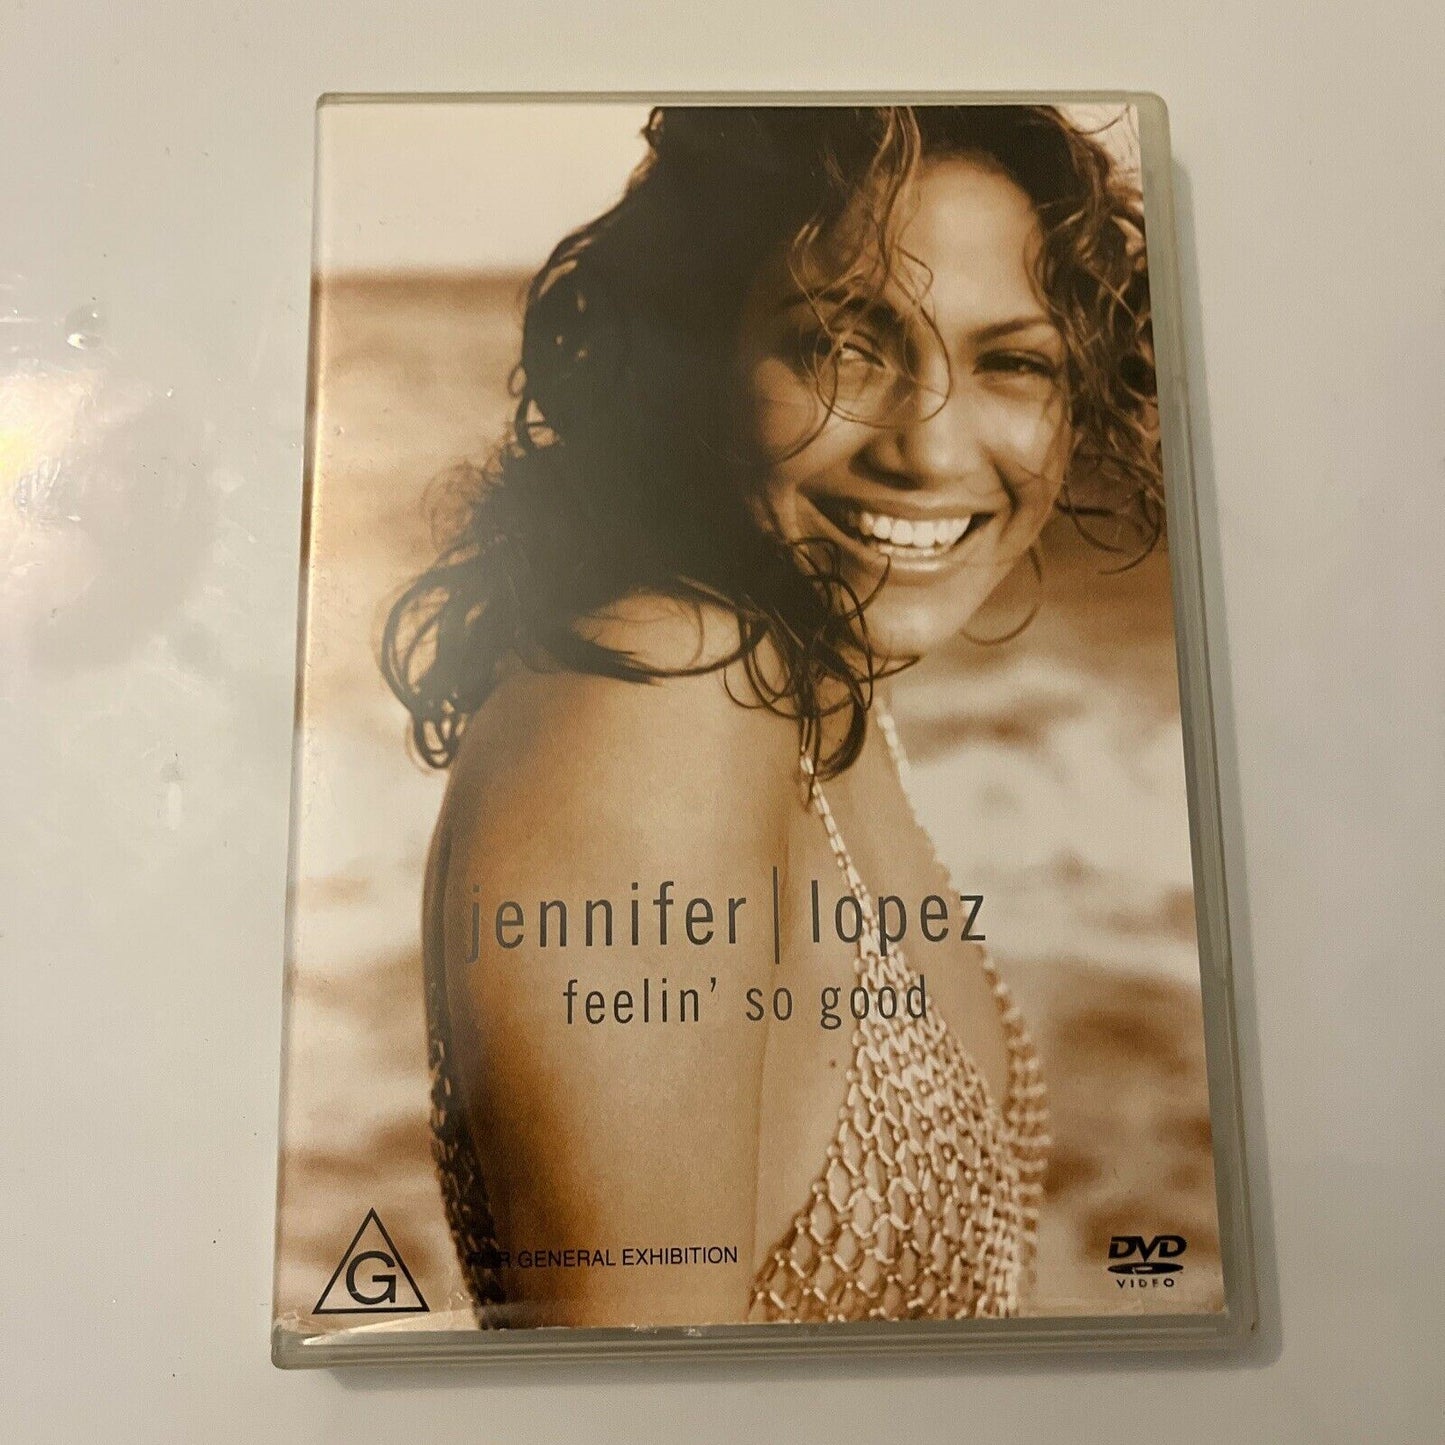 Jennifer Lopez - Feelin' So Good (DVD, 2000) All Regions